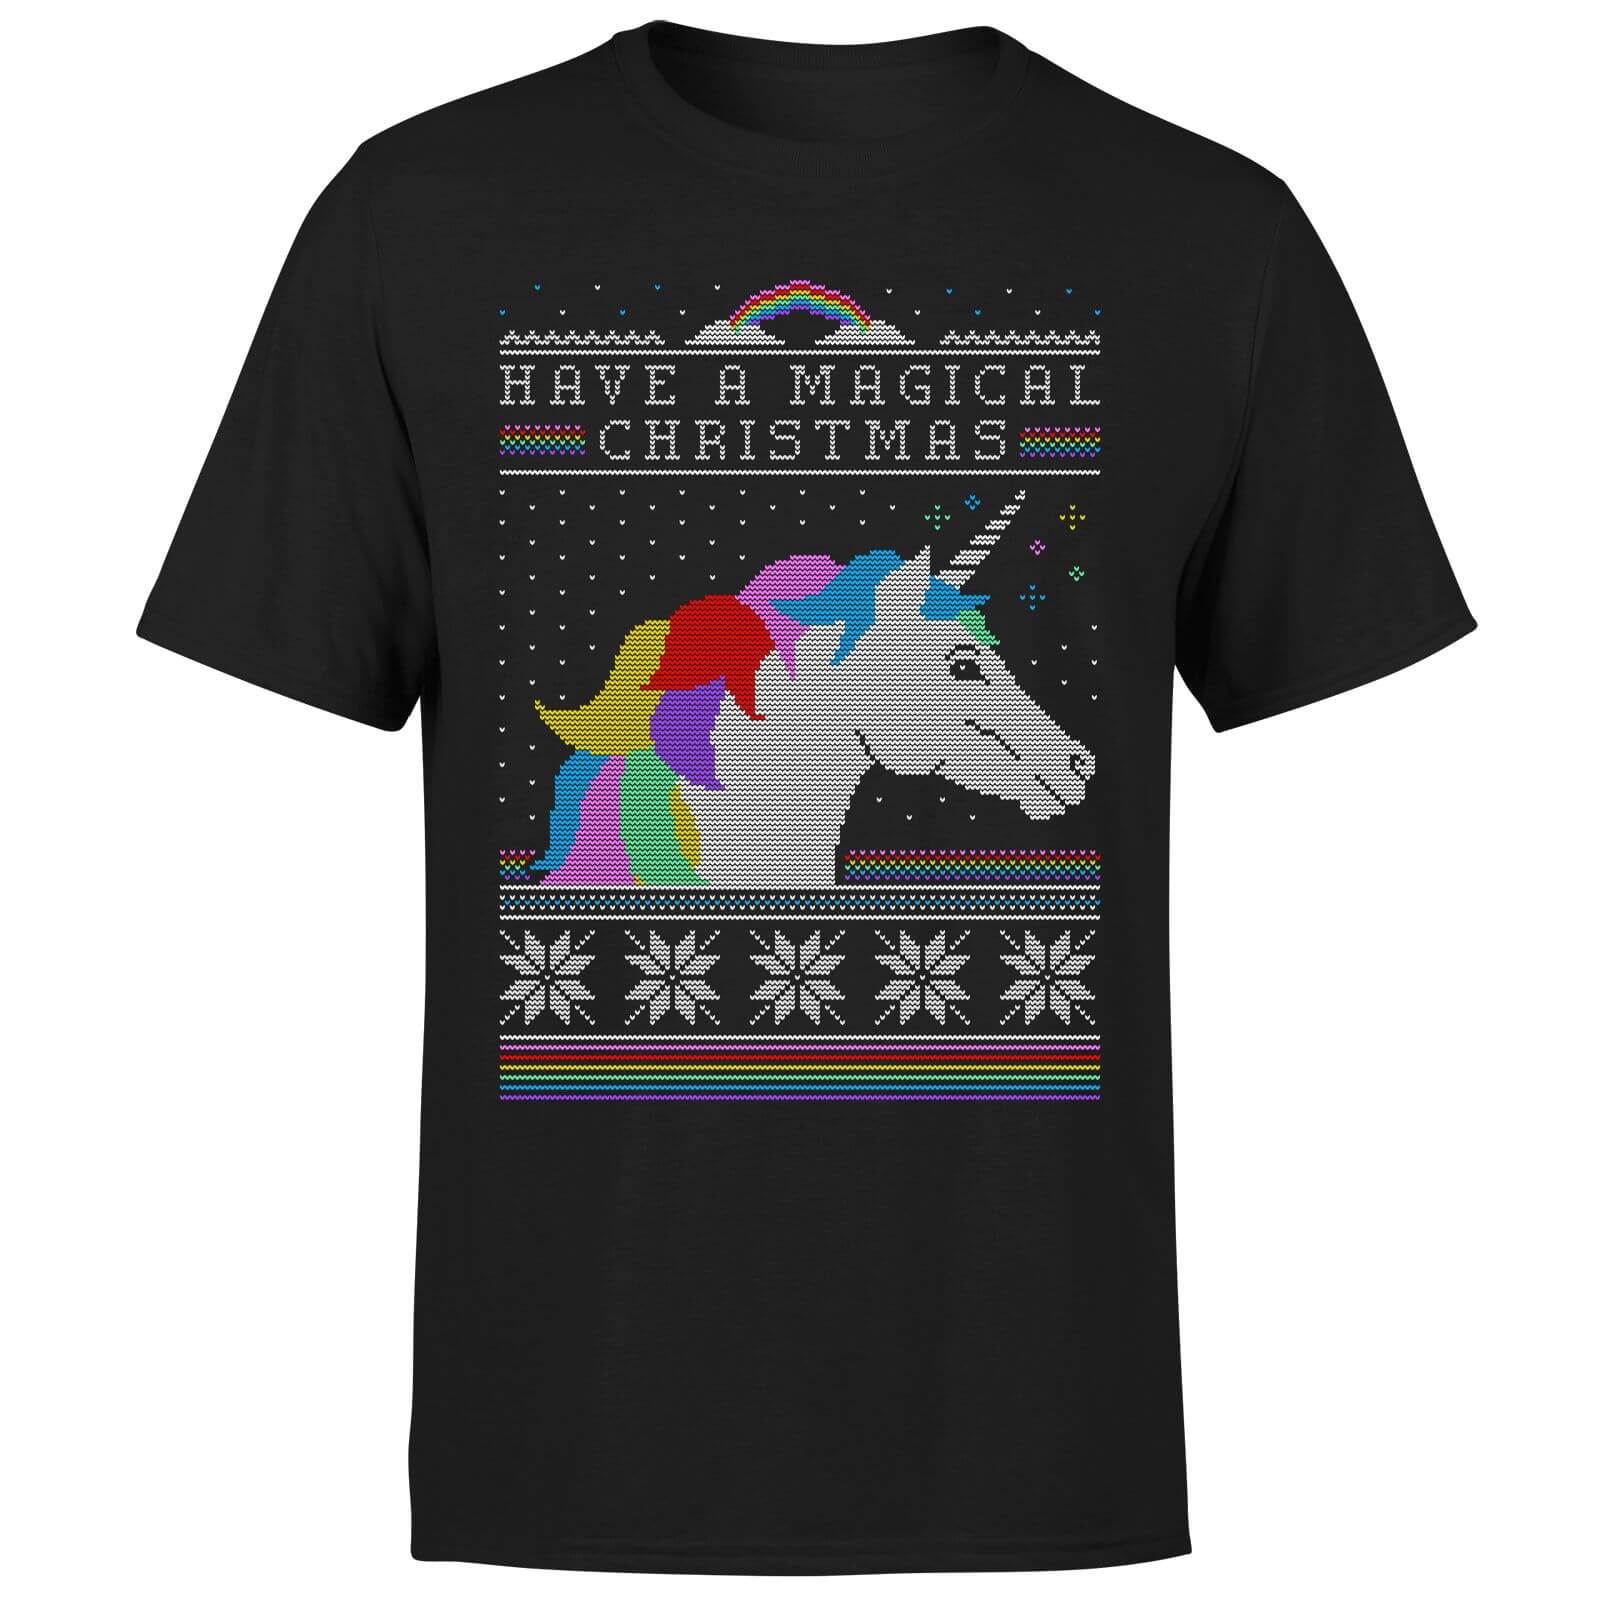 Have a magical Christmas Fair isle T-Shirt - Black - XXL - Black